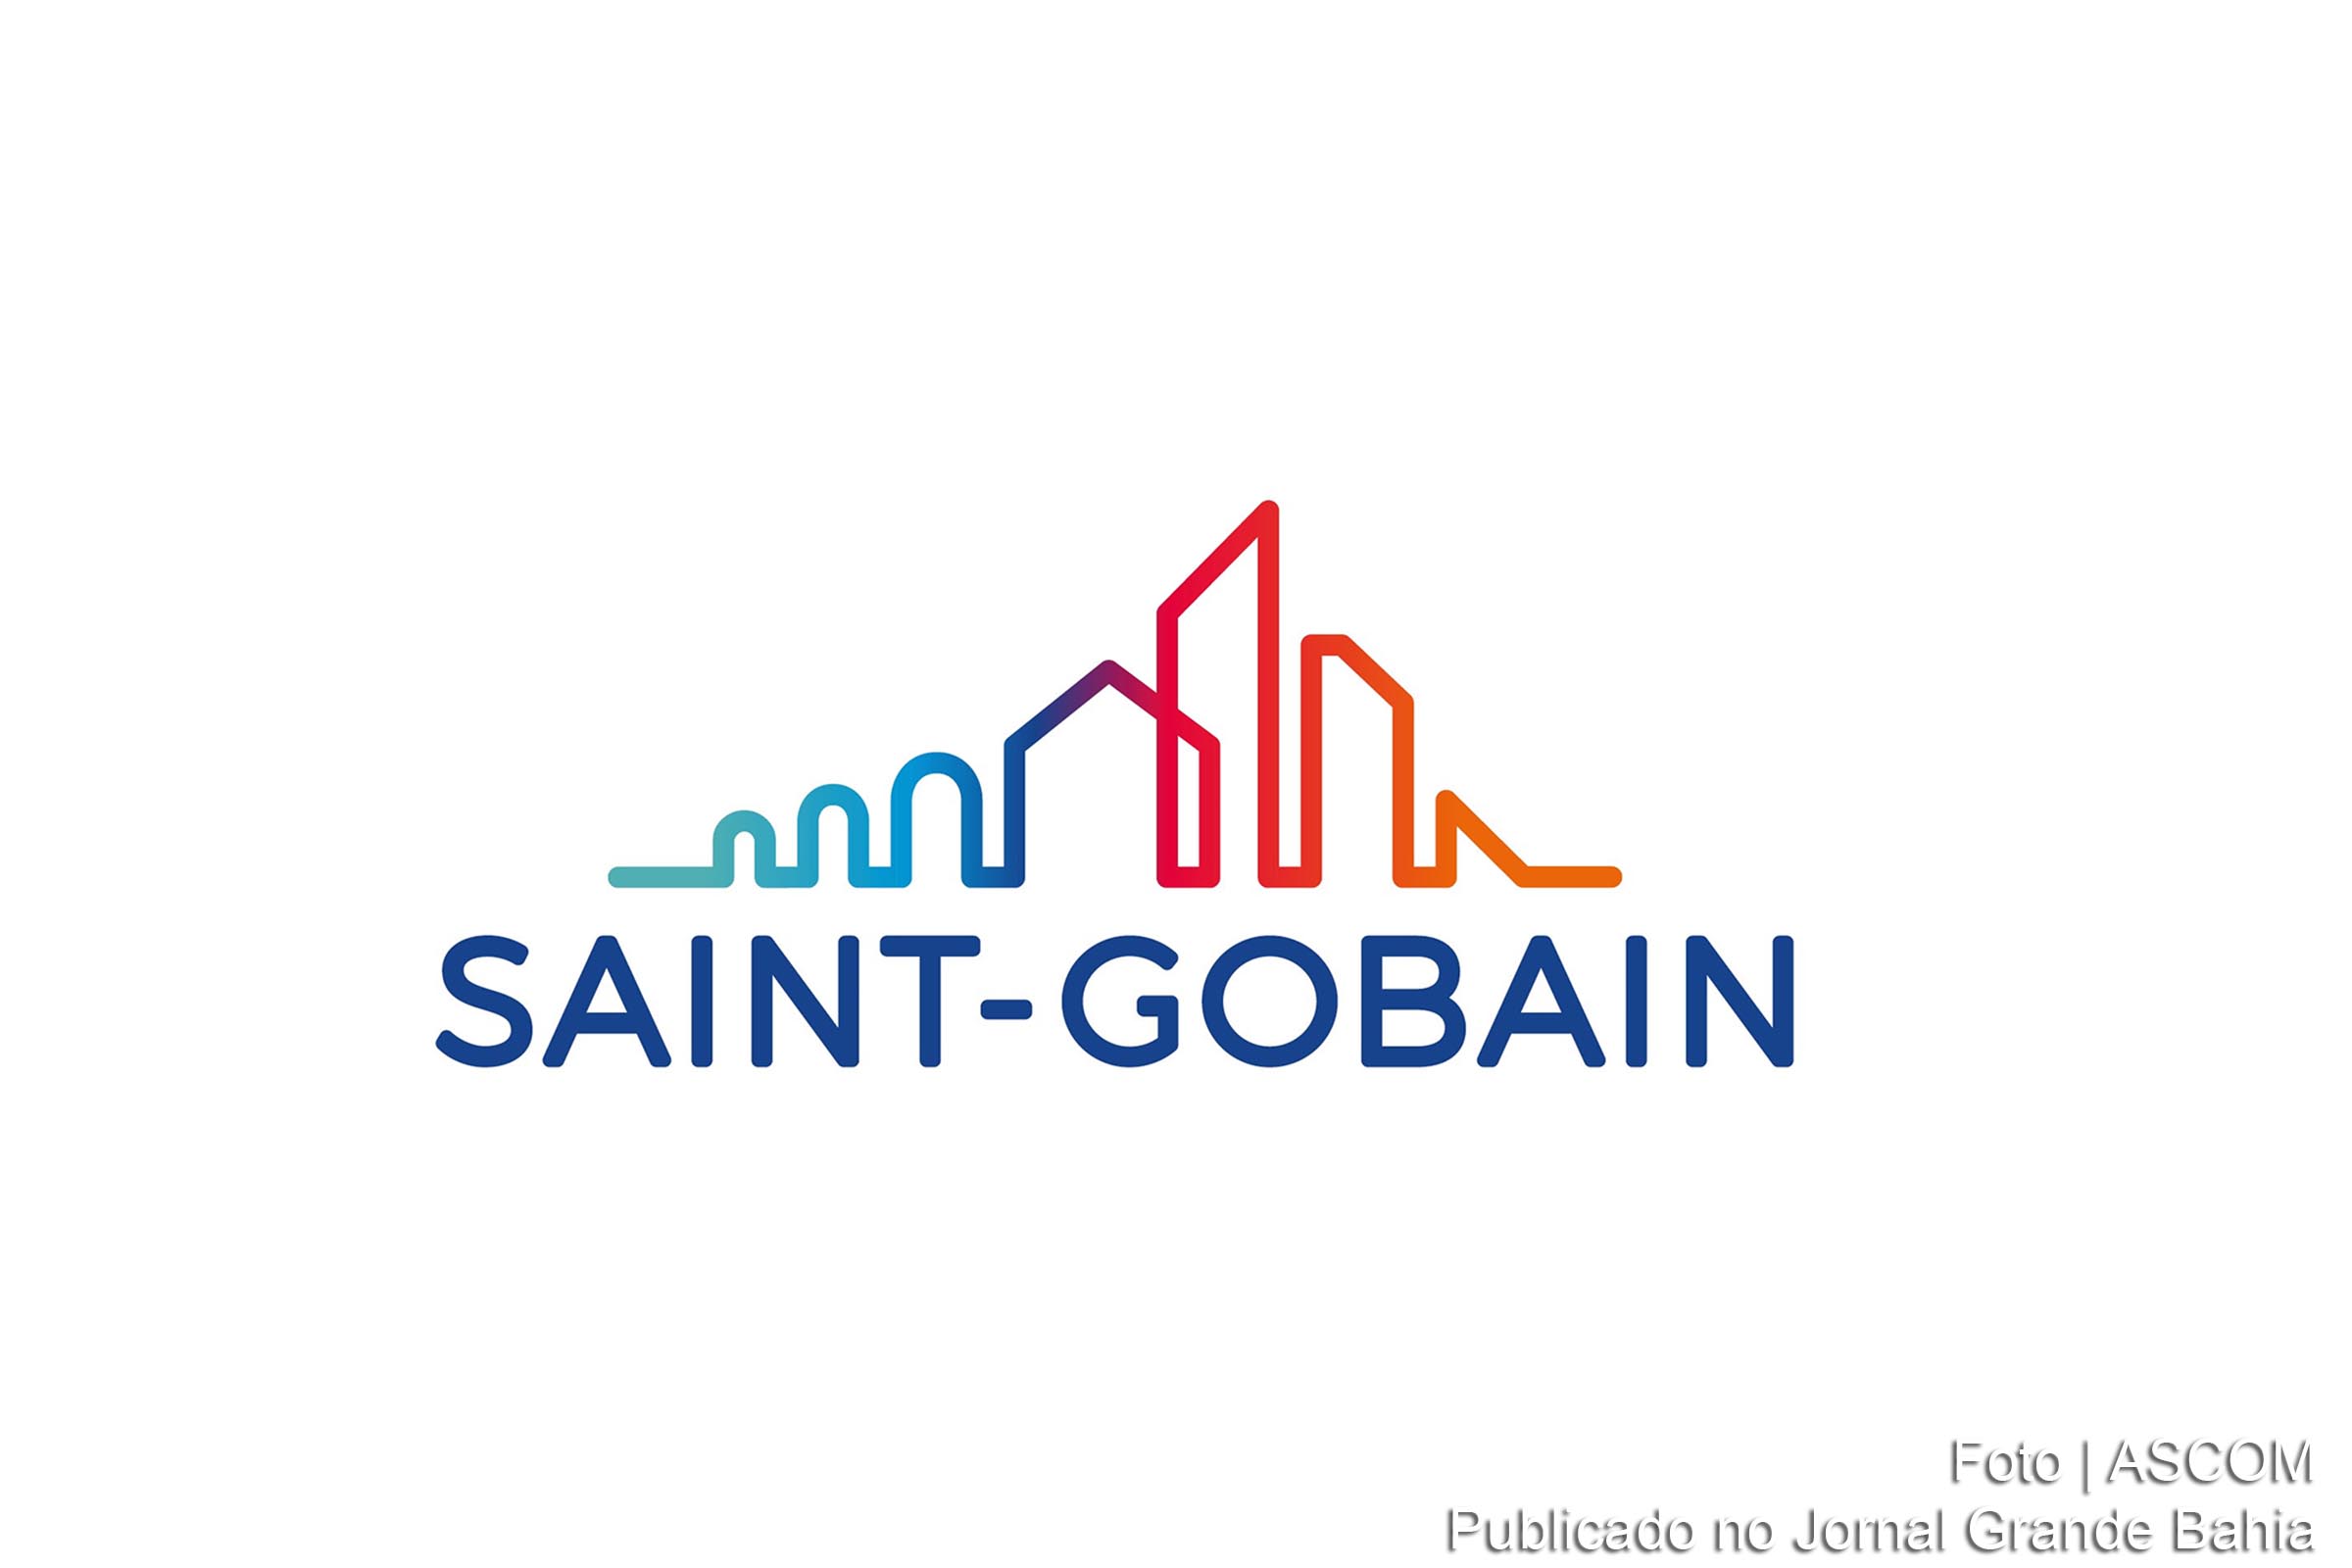 Saint-Gobain é o nome de uma companhia multinacional de origem francesa. Fundada em 1665 pelo político francês Jean-Baptiste Colbert para manufaturar vidros planos com o nome de La Compagnie des Glaces, produziu os famosos espelhos do Palácio de Versailles.